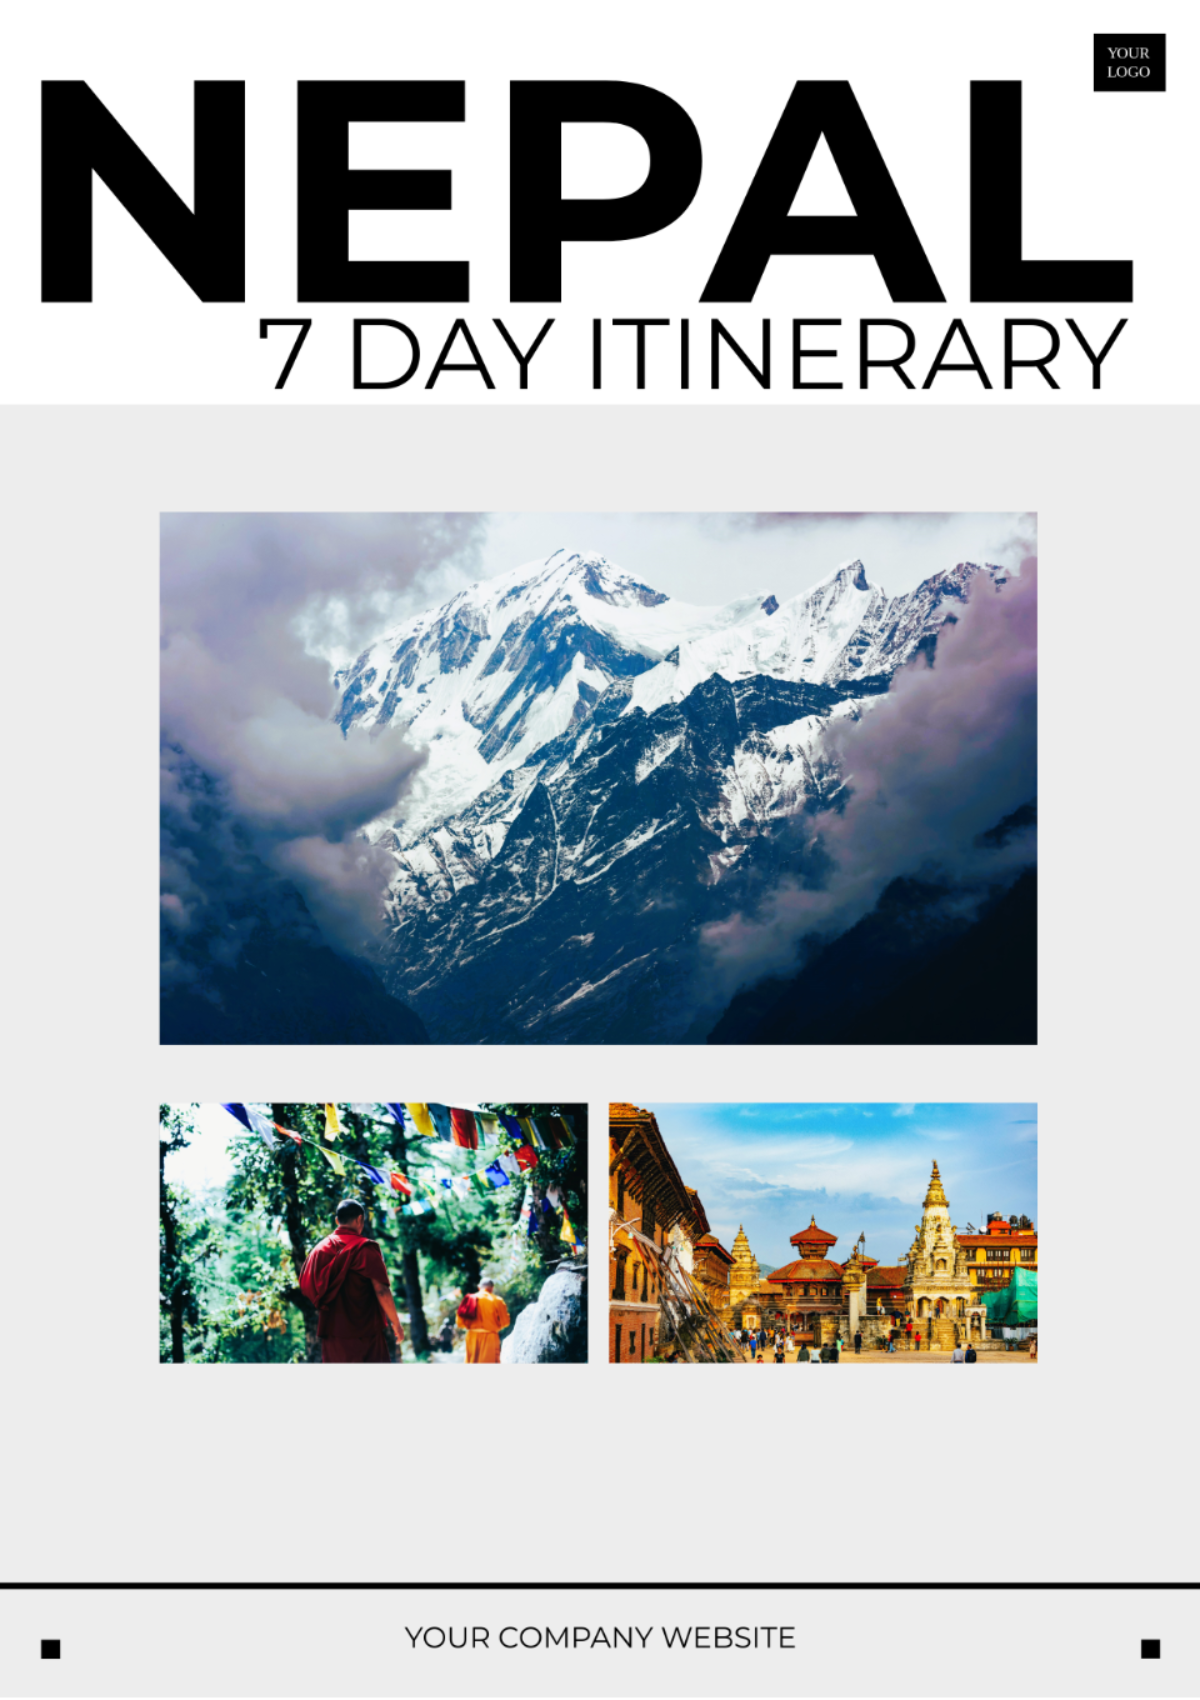 Free 7 Day Nepal Itinerary Template